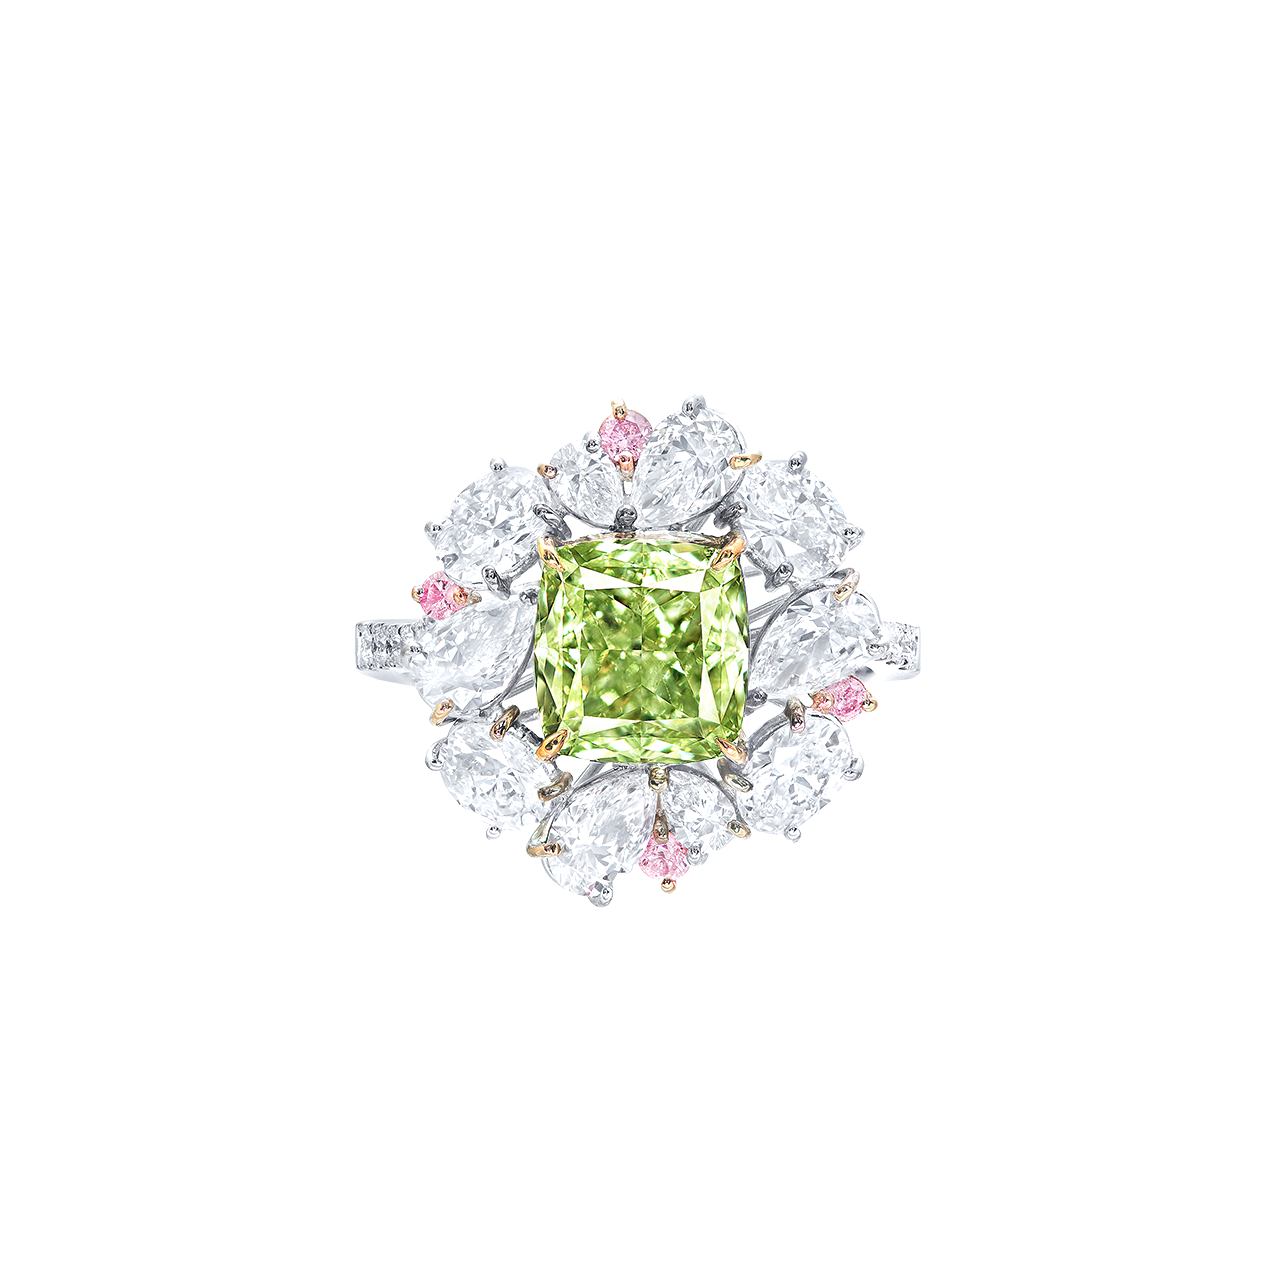 GIA 2.85克拉 灰黃綠彩鑽戒
Fancy Grayish Yellowish Green
Colored Diamond Ring